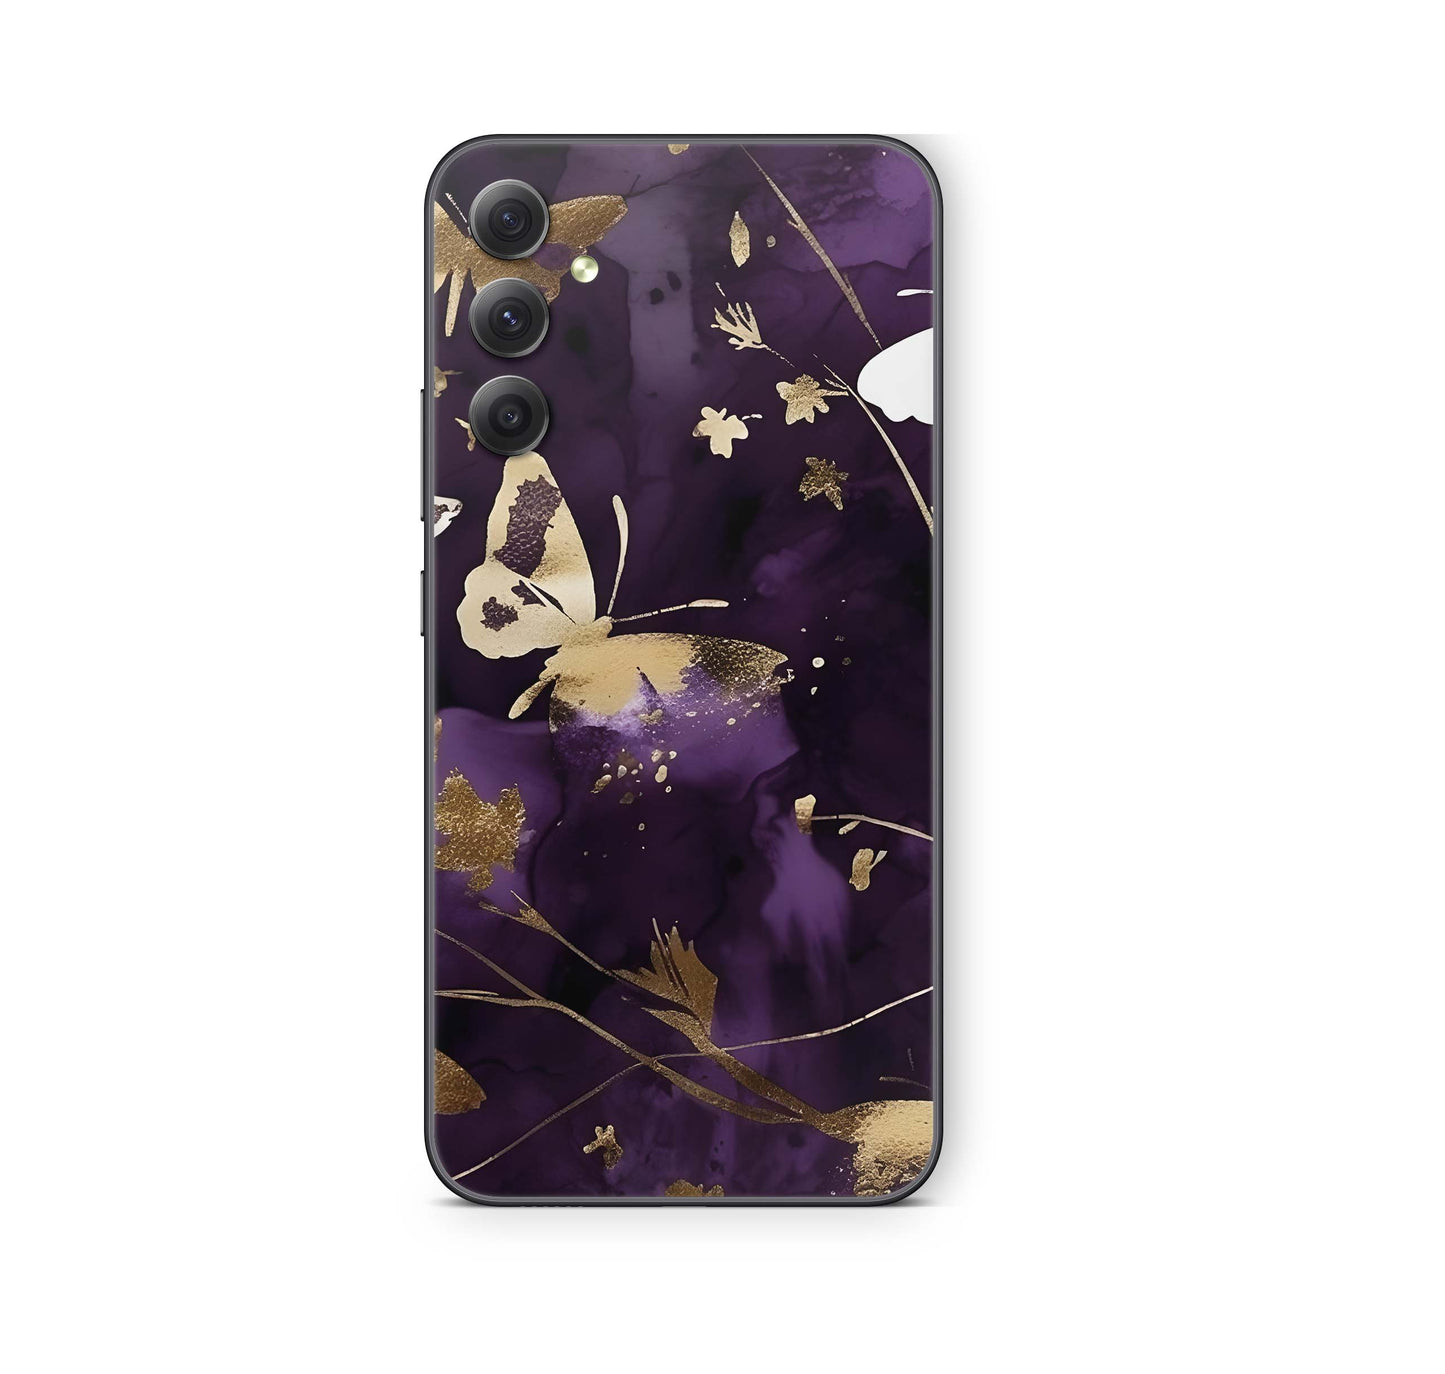 Samsung Galaxy A52 Skin Schutzfolie Aufkleber Skins Design Purple Butterfly Elektronik-Sticker & -Aufkleber skins4u   